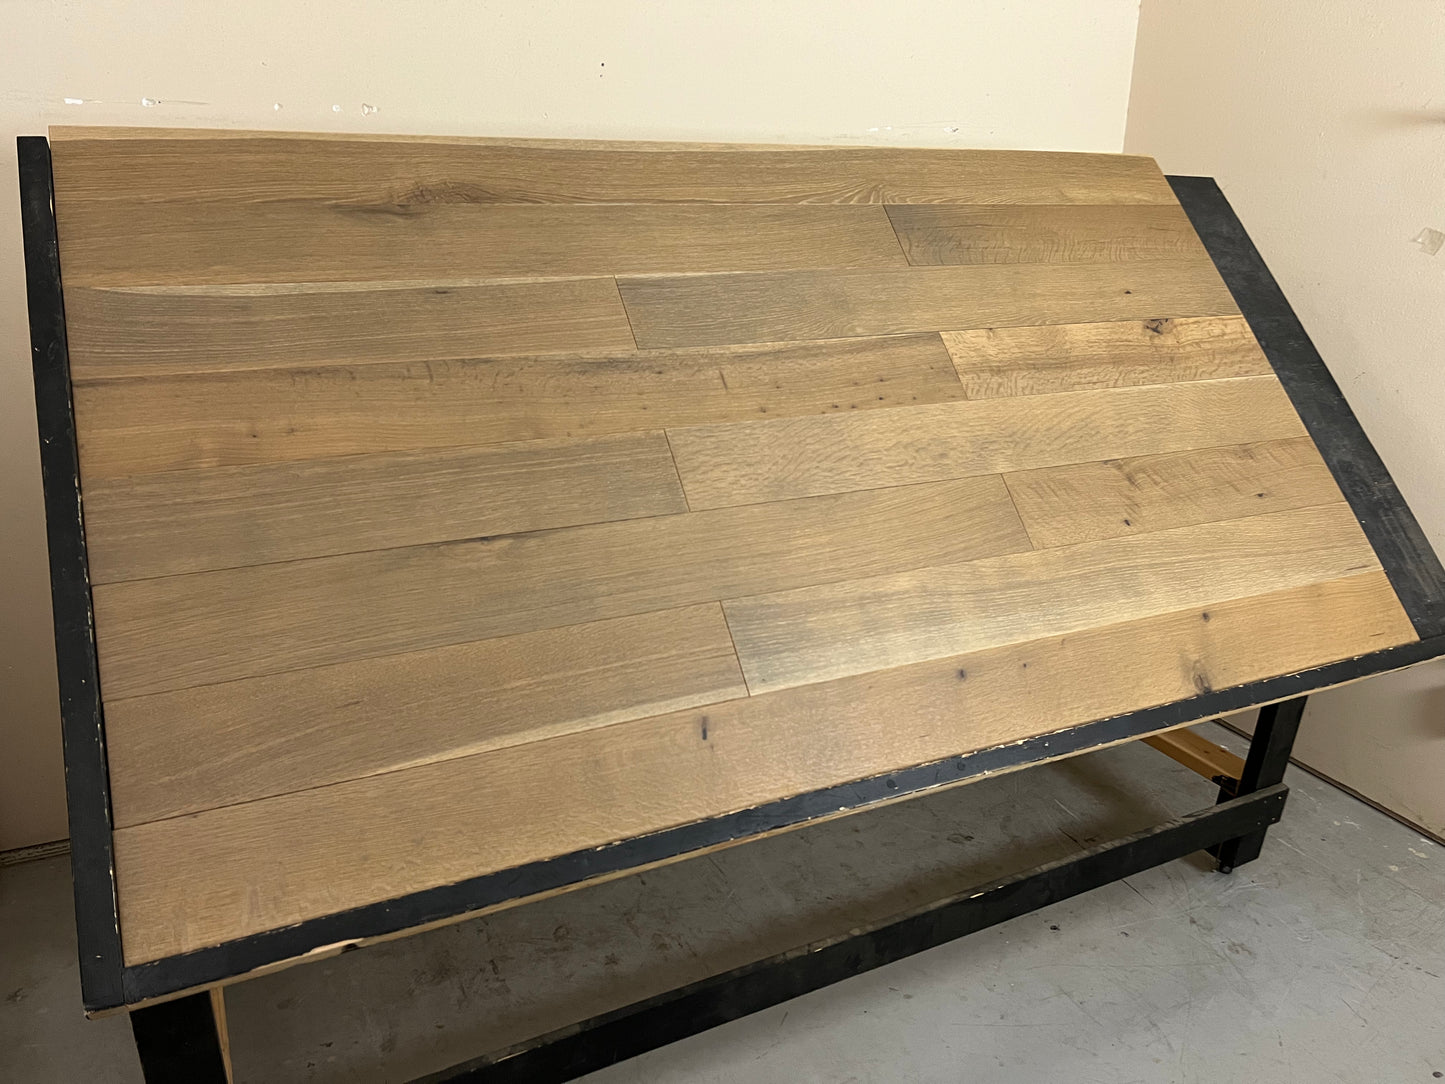 6" x 5/8" Engineered White Oak Barn Oak stain Rift & Quartered Hardwood Flooring